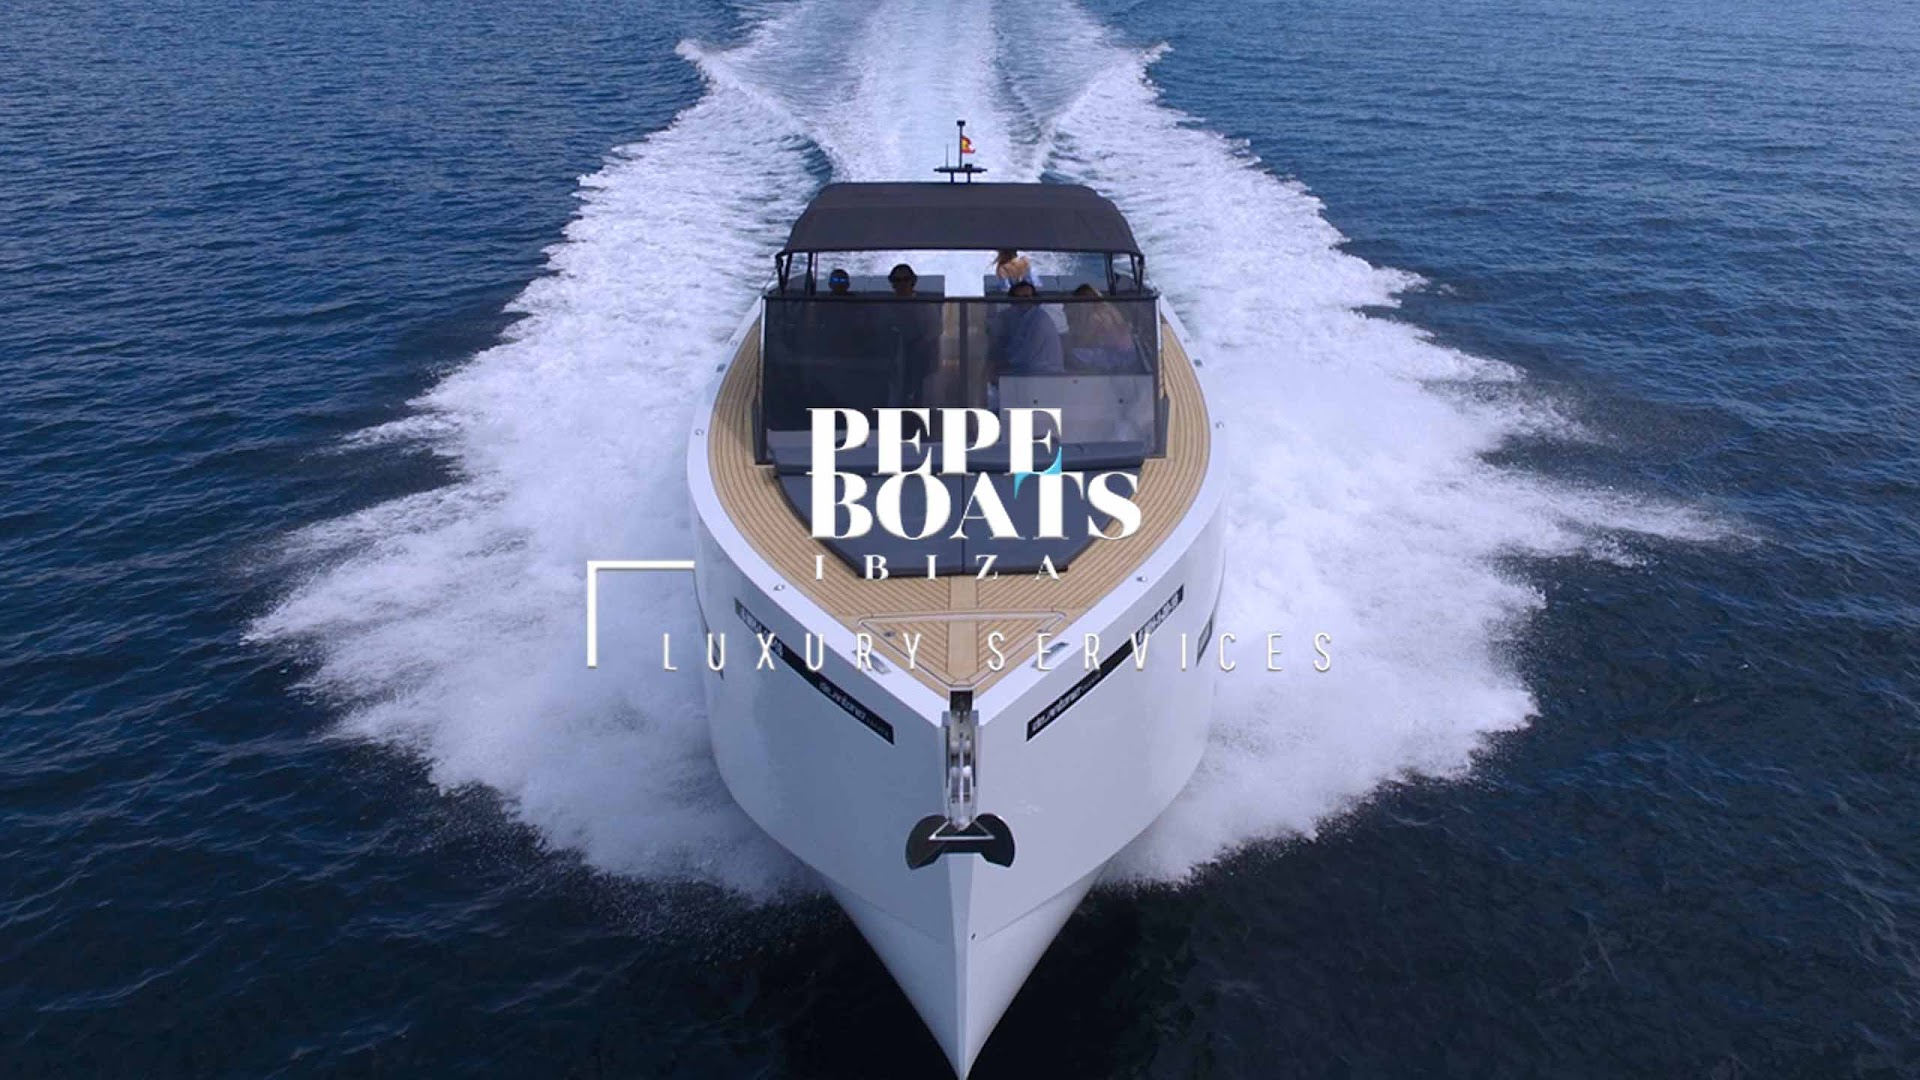 PepeBoats Ibiza